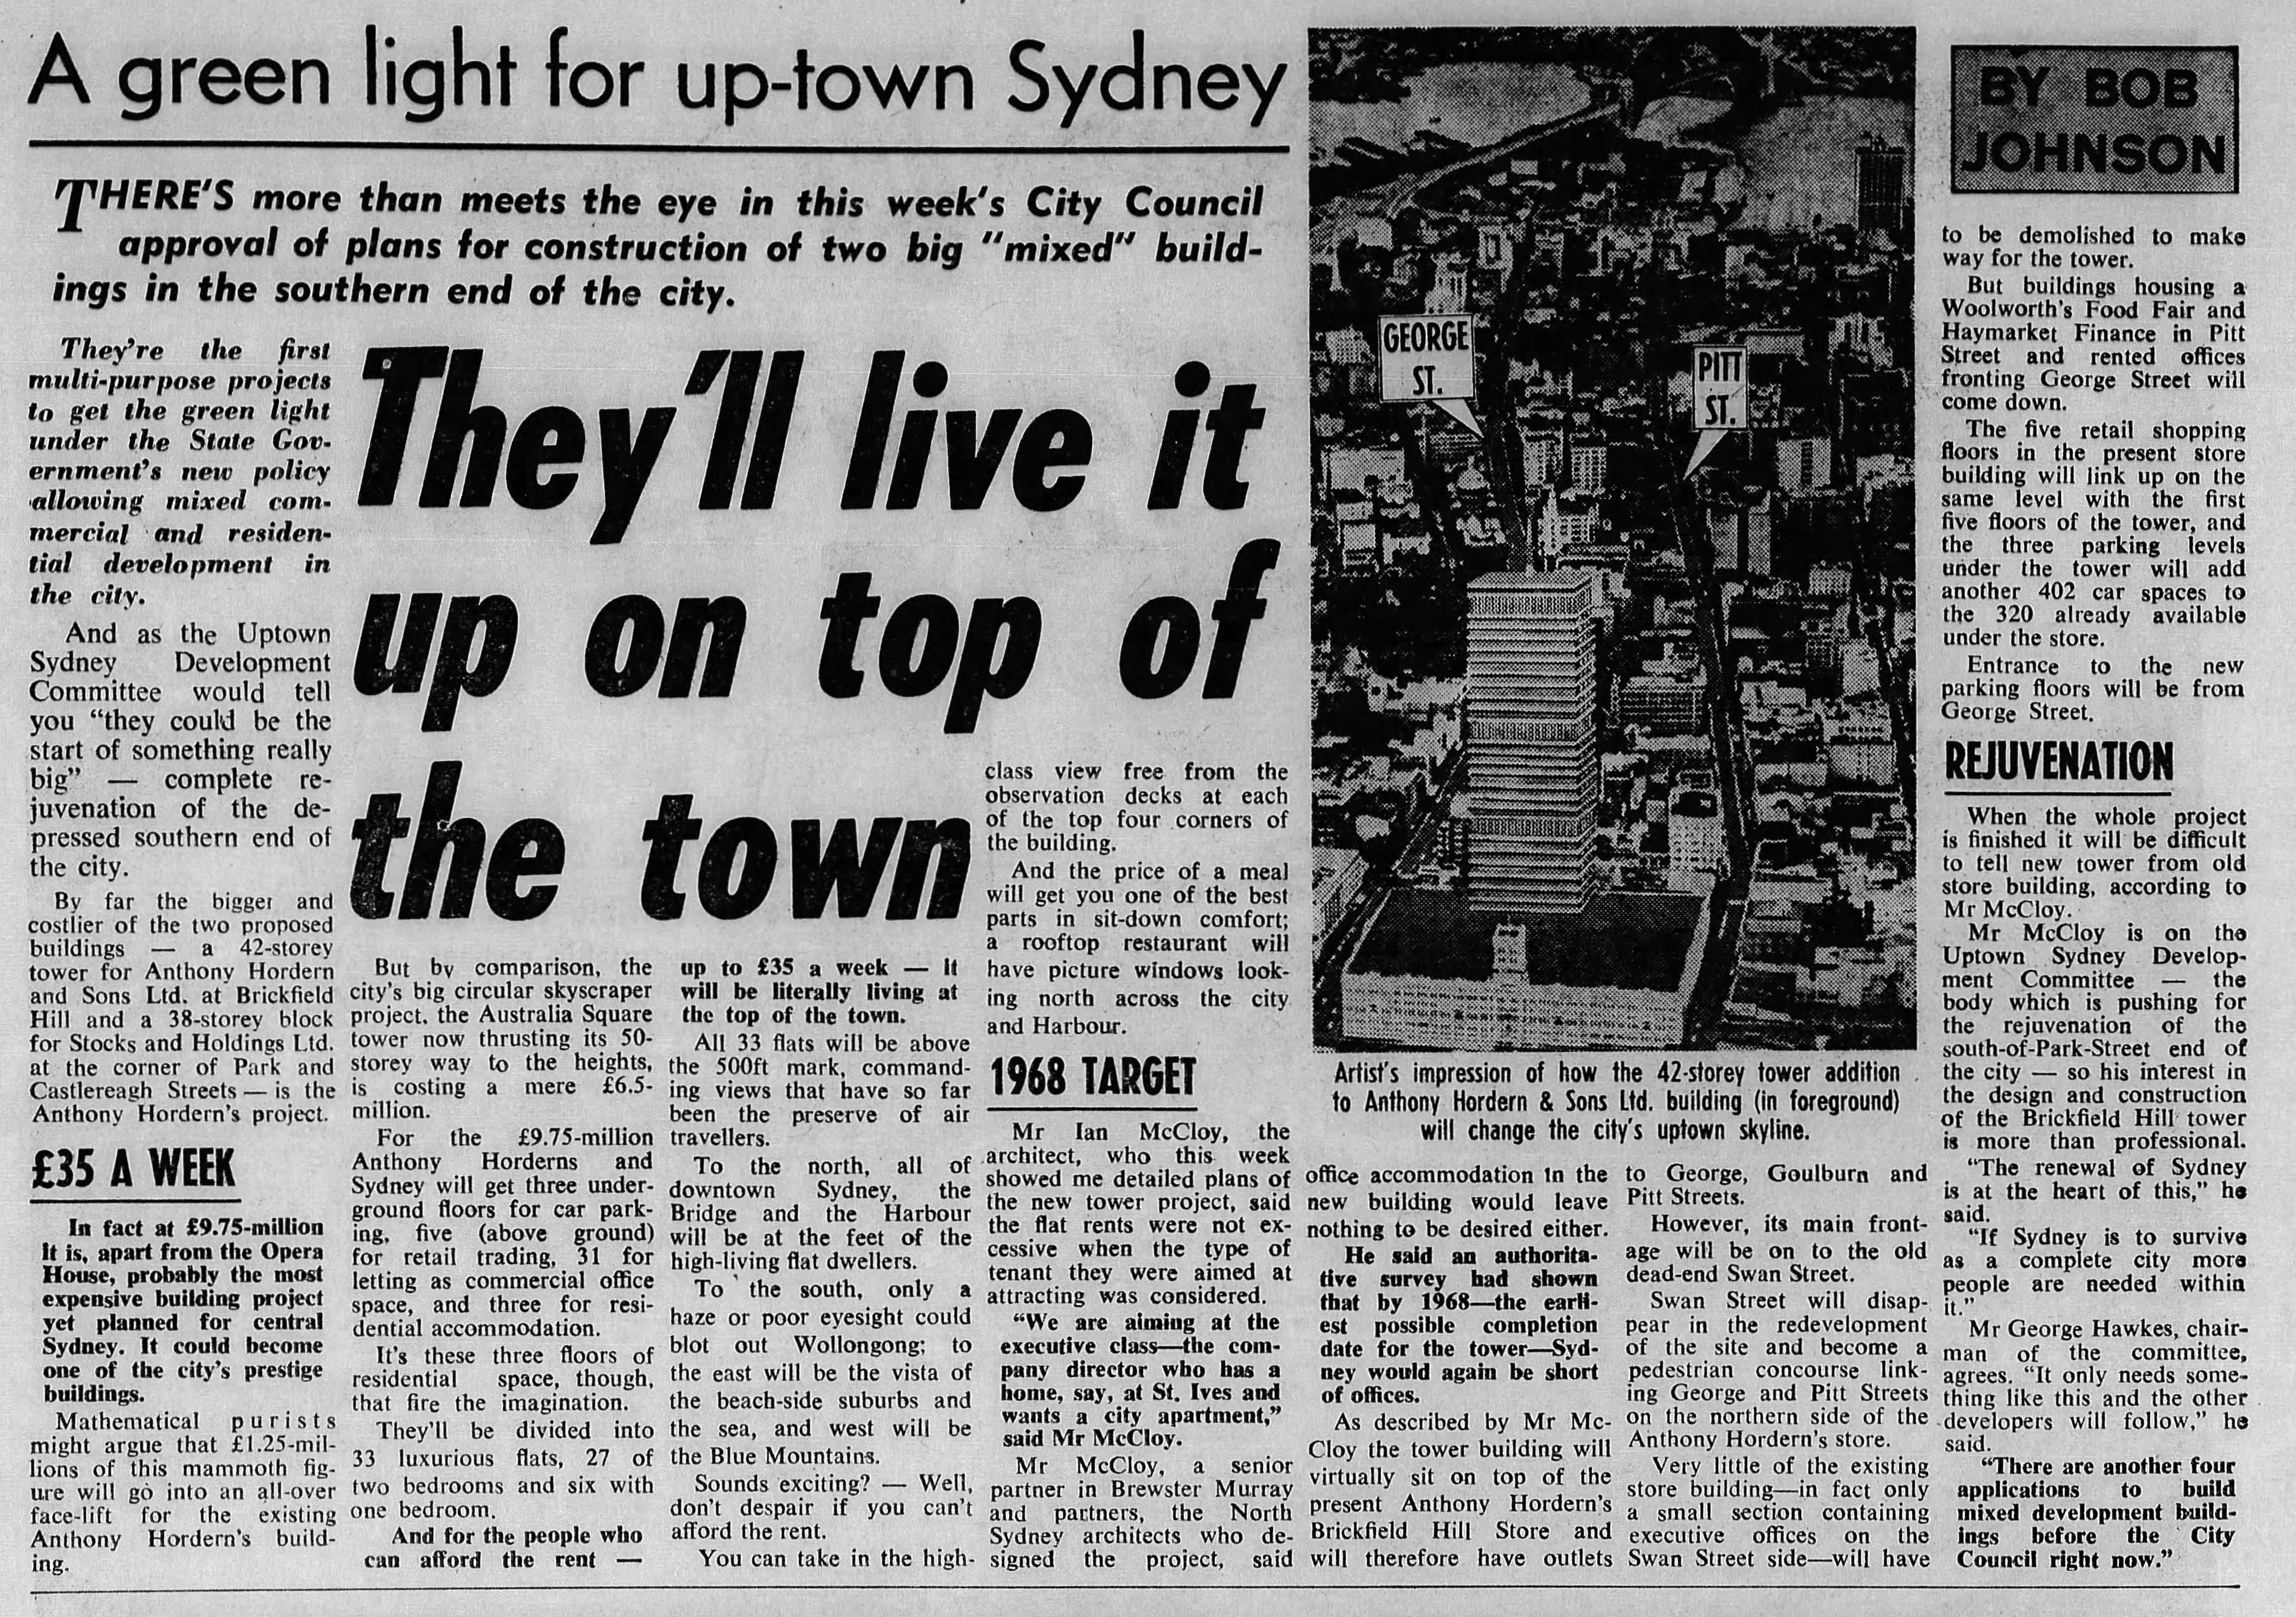 Anthony Horderns Redevelopment September 26 1965 Sun Herald 45